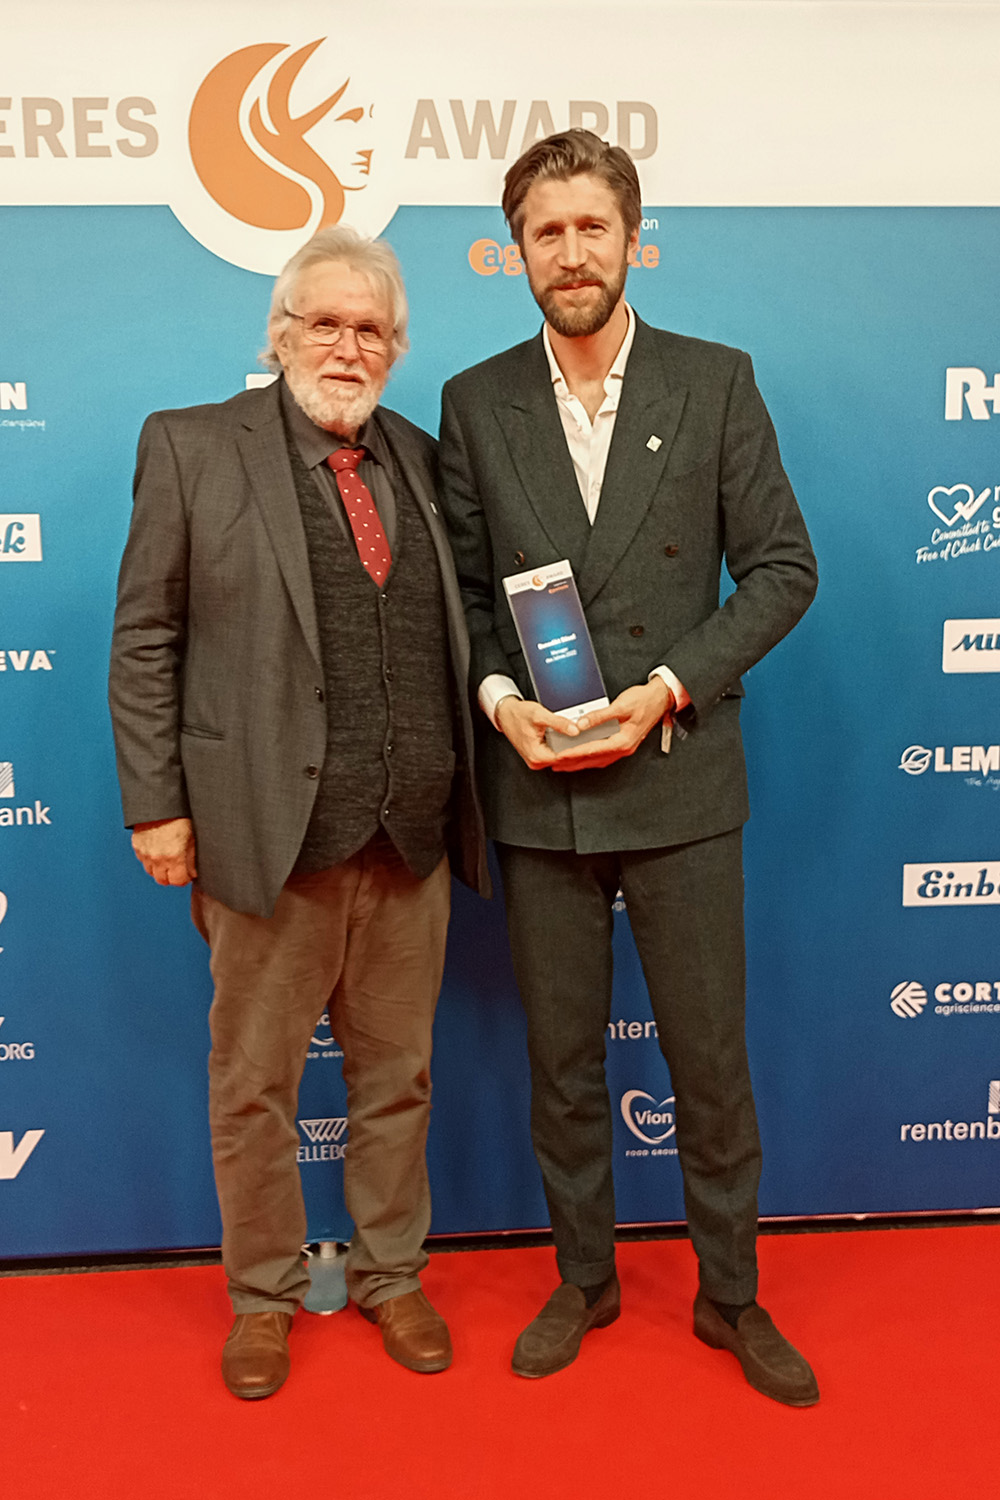 Peter Wahrlich und Benedikt Bösel beim Ceres Award